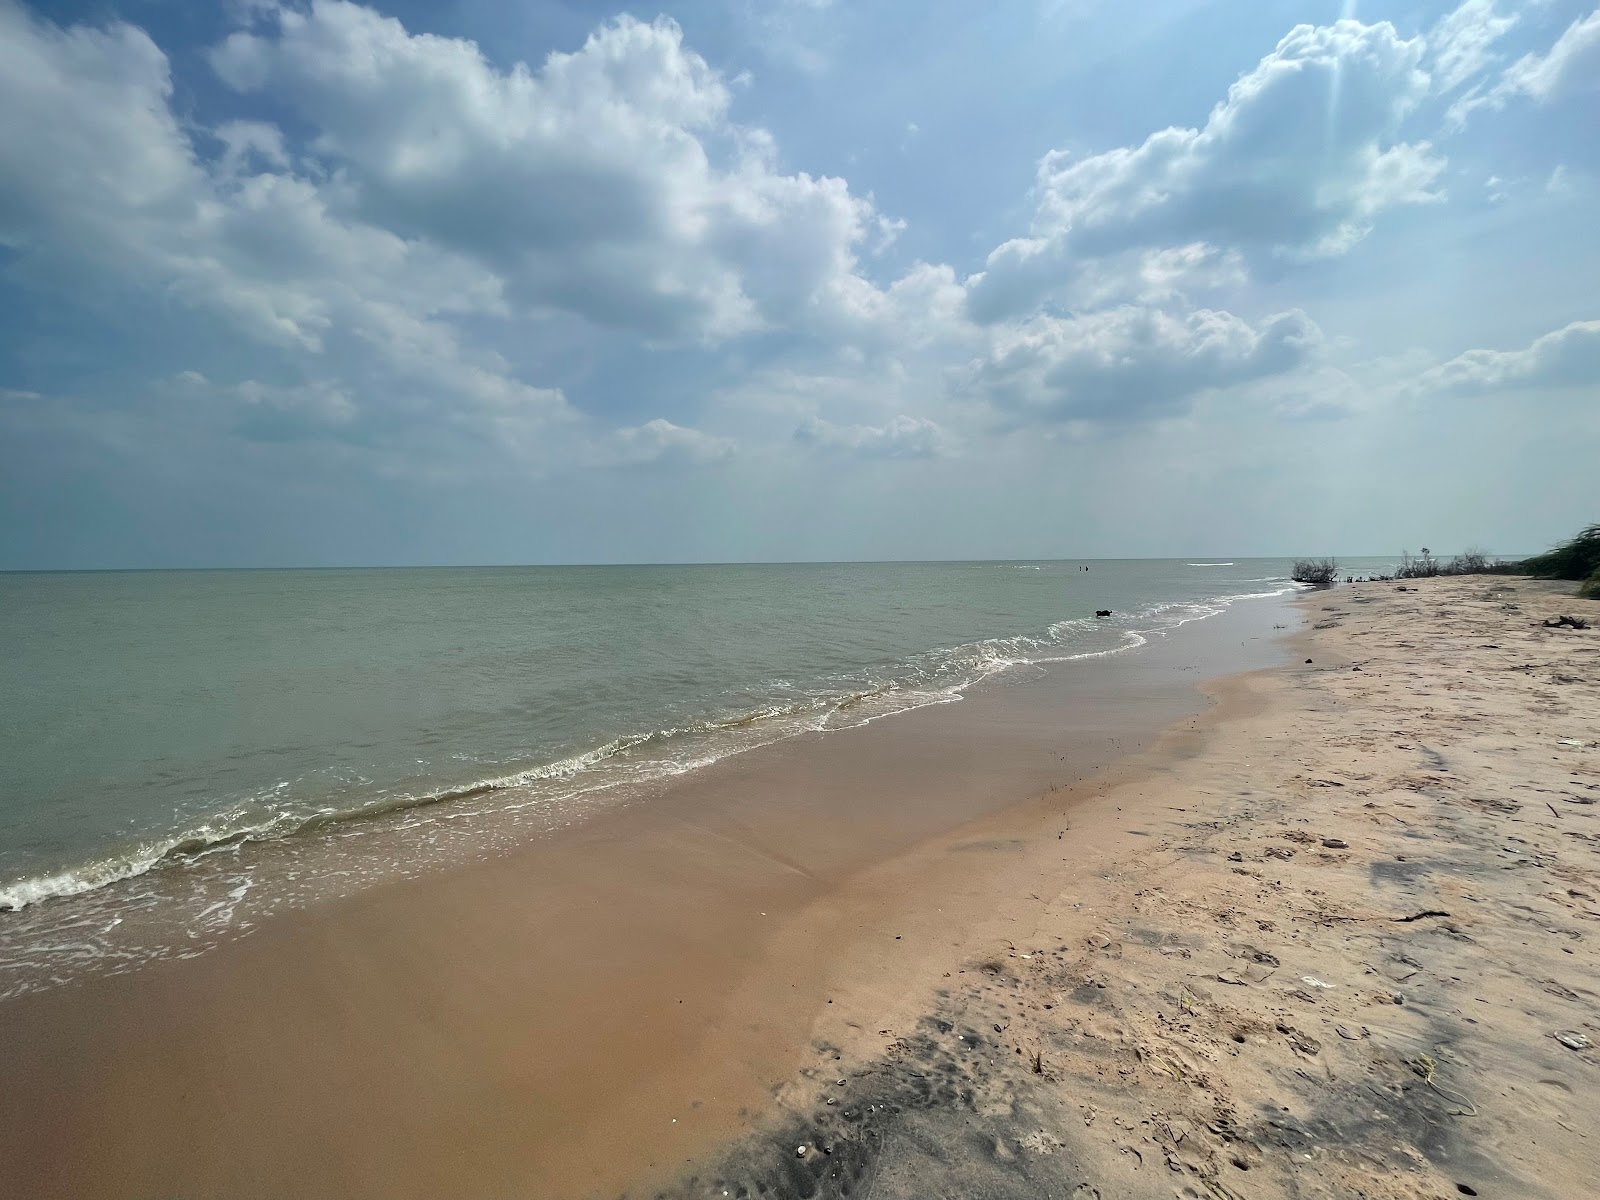 Rajamadam Beach'in fotoğrafı parlak kum yüzey ile